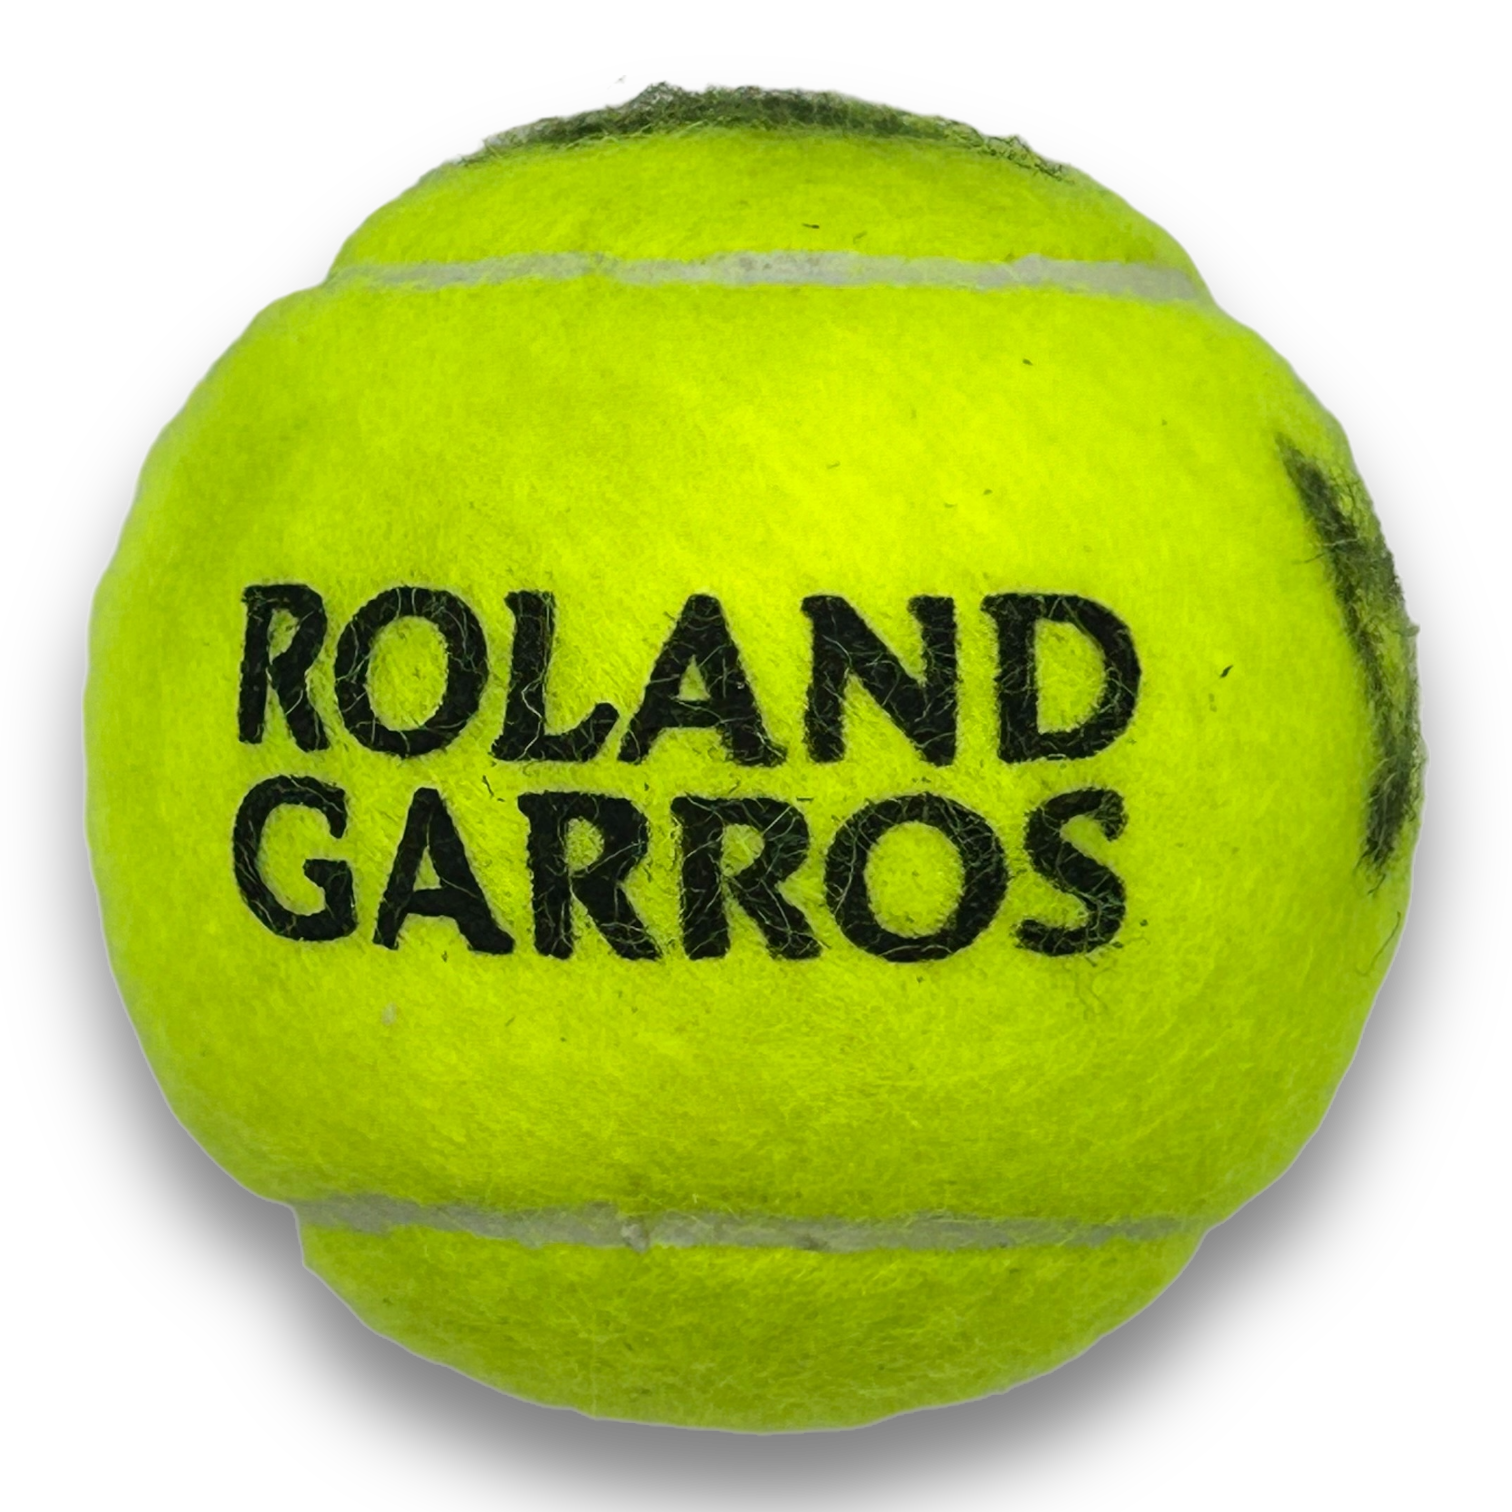 PAULA BADOSA SIGNED WILSON 3 ROLAND GARROS TENNIS BALL (AFTAL COA)